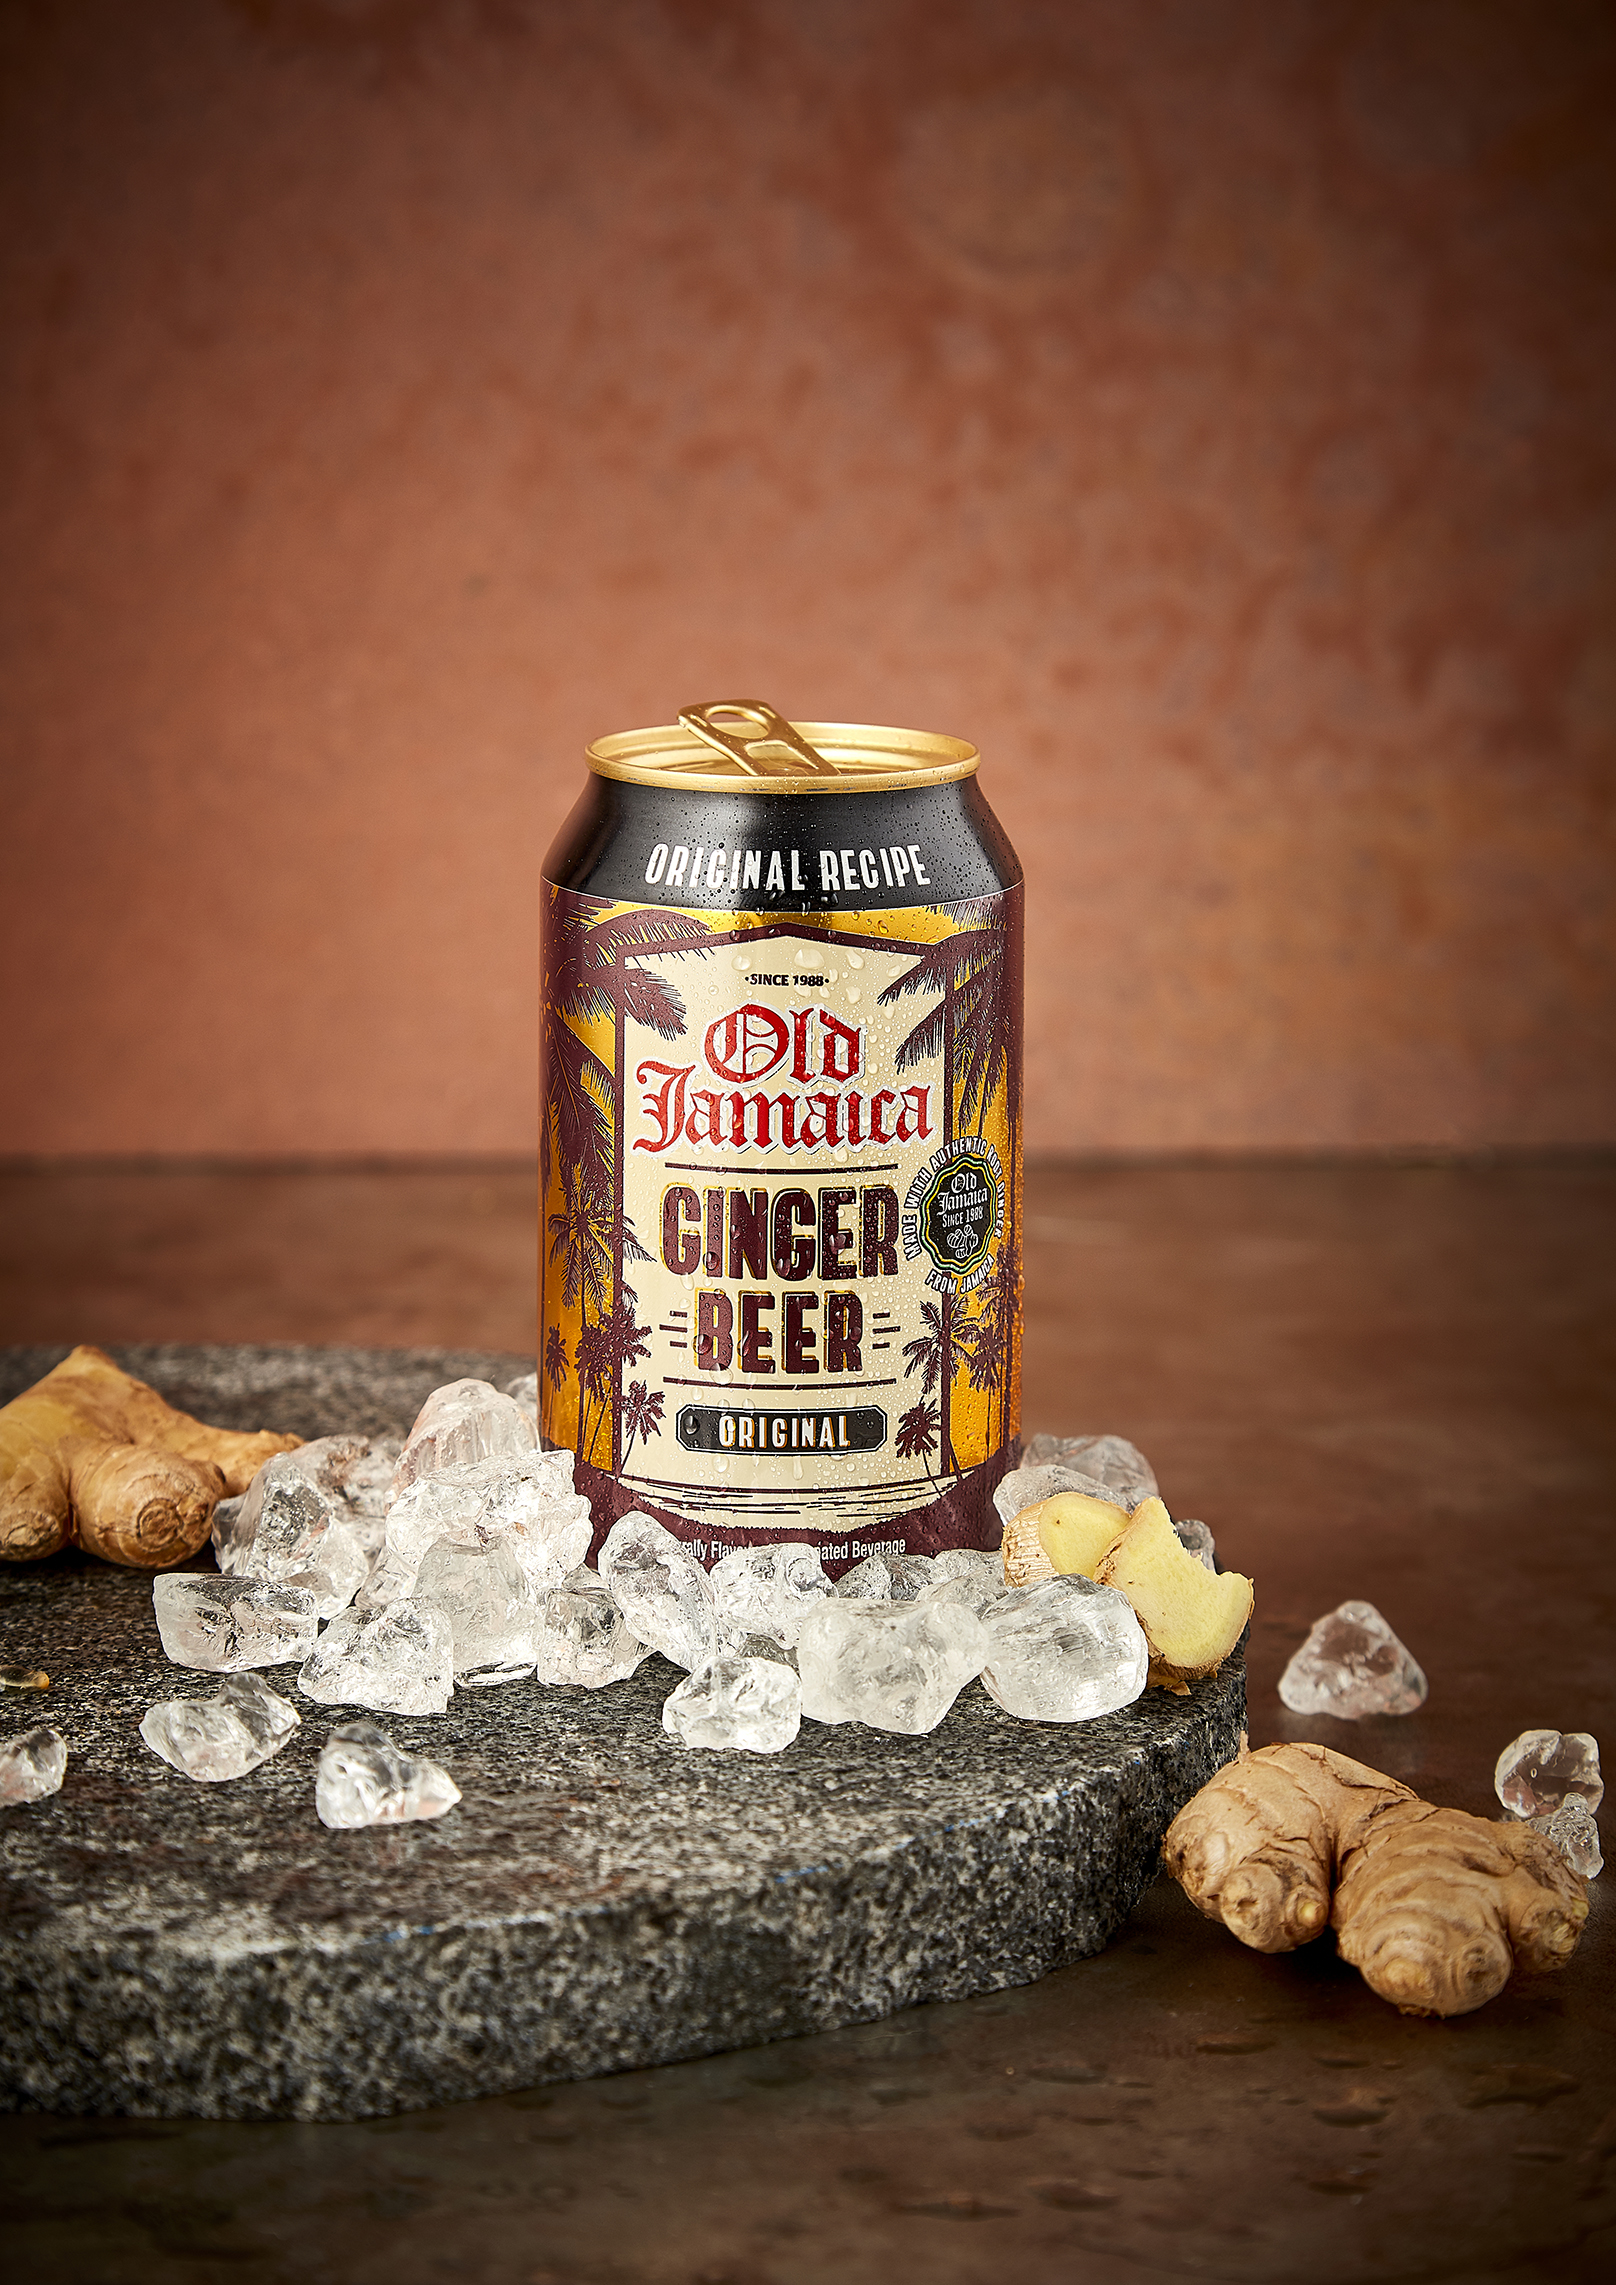 Old Jamaica brings back original full-sugar ginger beer recipe